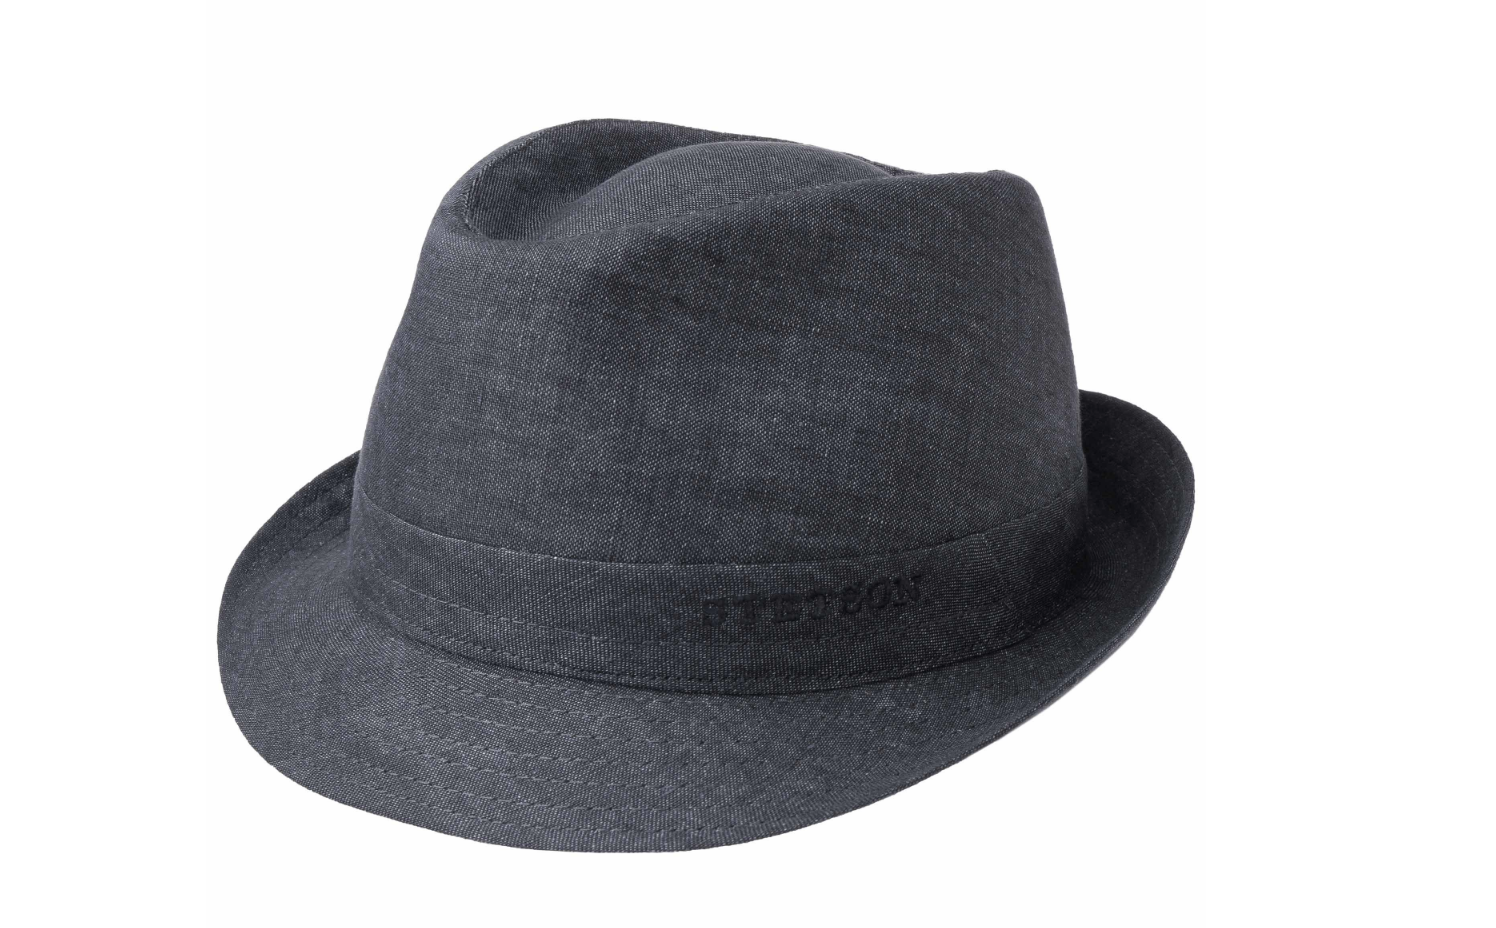 Un couvre-chef pour les porteurs de barbe : le chapeau trilby.